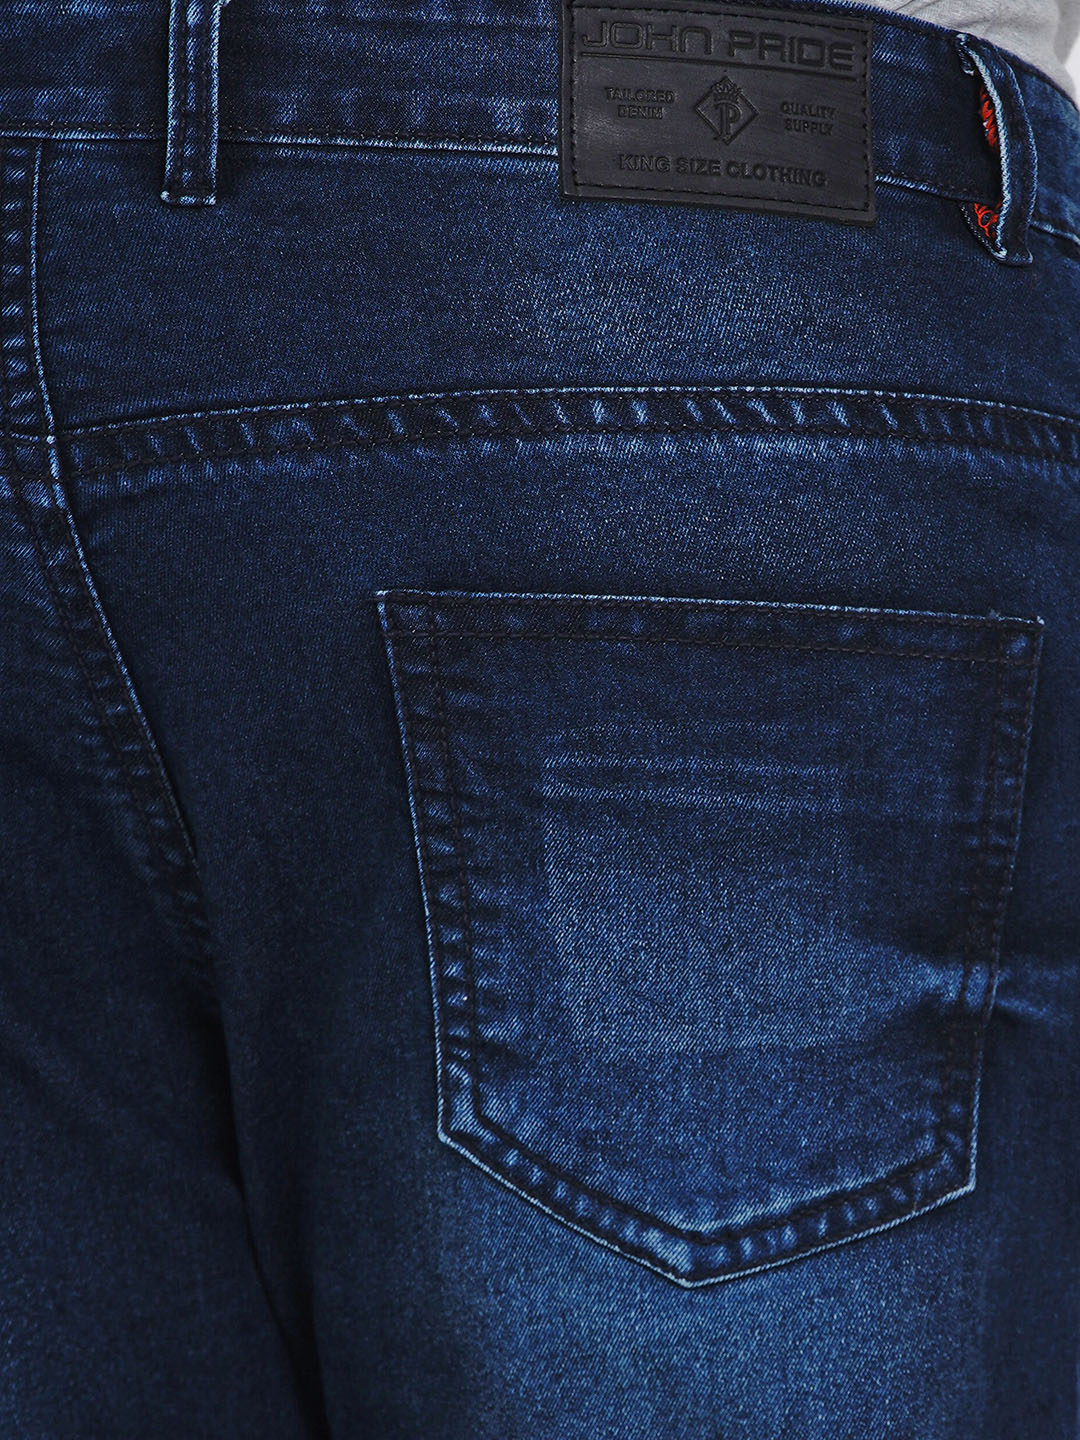 bottomwear/jeans/JPJ2014/jpj2014-3.jpg